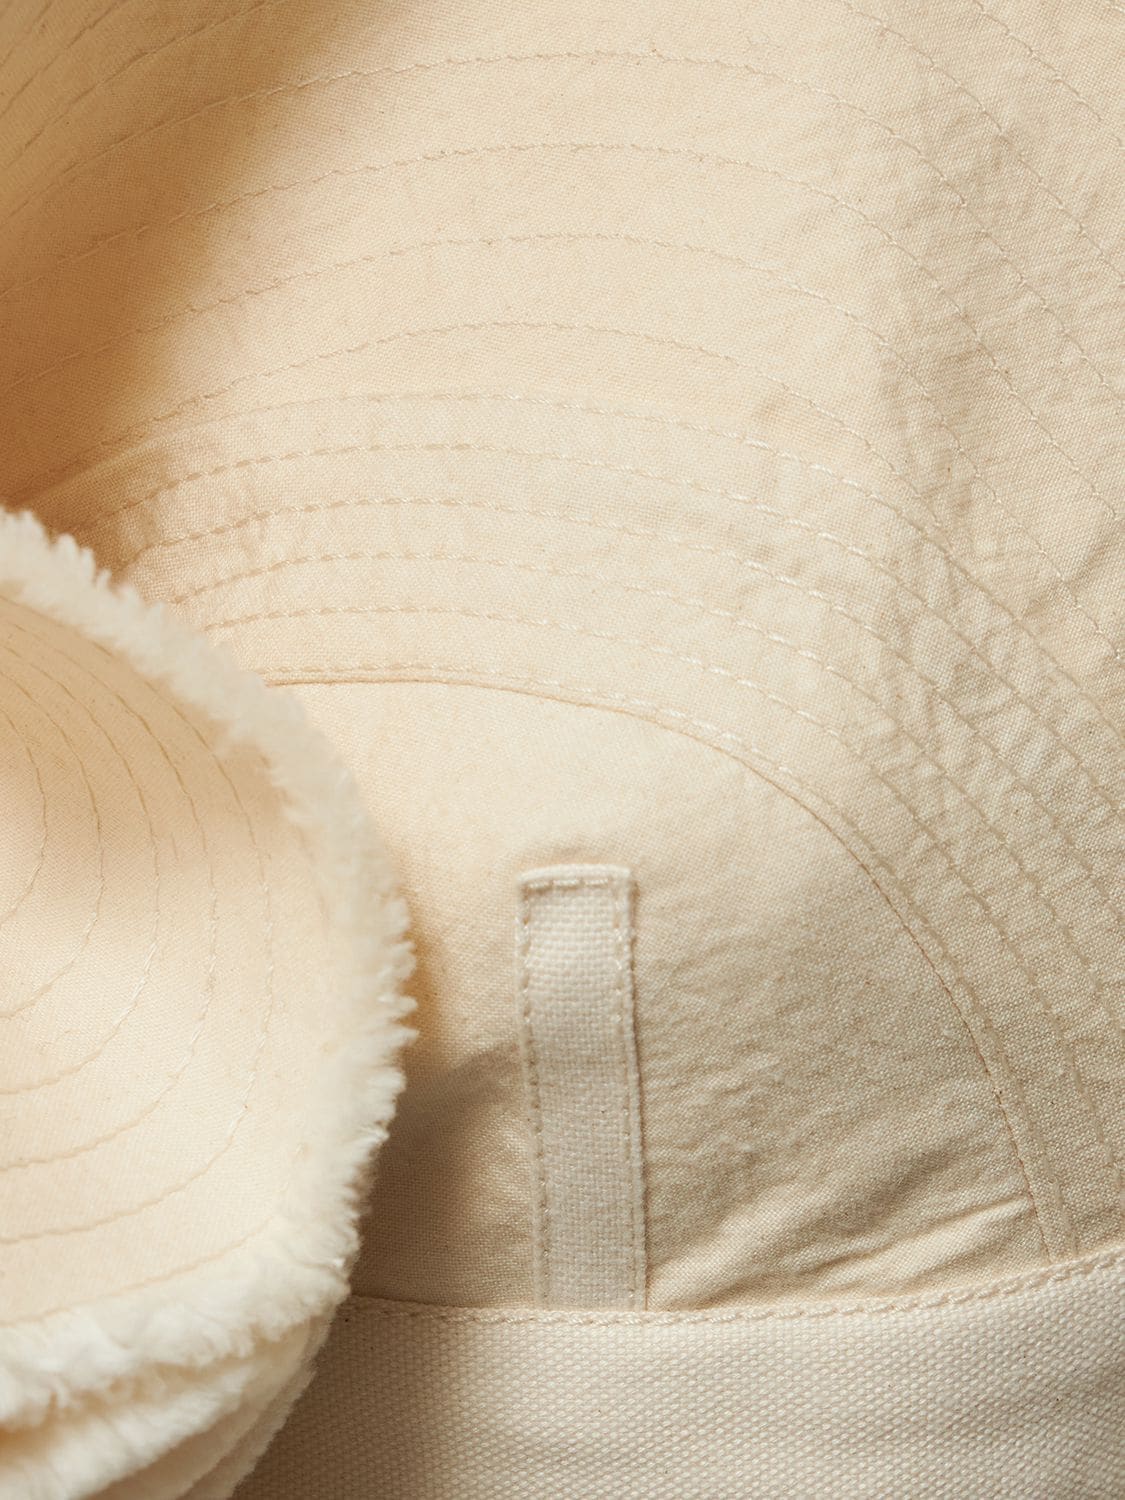 Bralette in off-white cotton